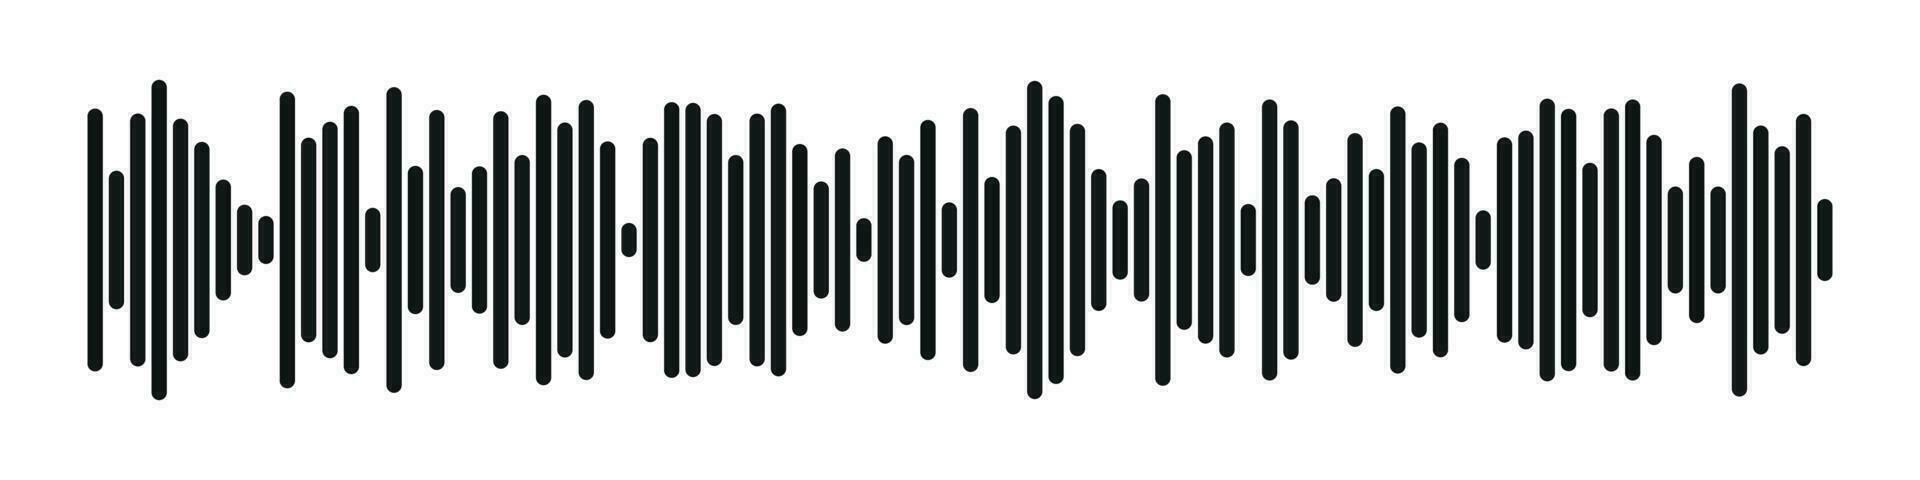 sonido radio forma. resumen música audio onda de sonido. vector aislado ilustración